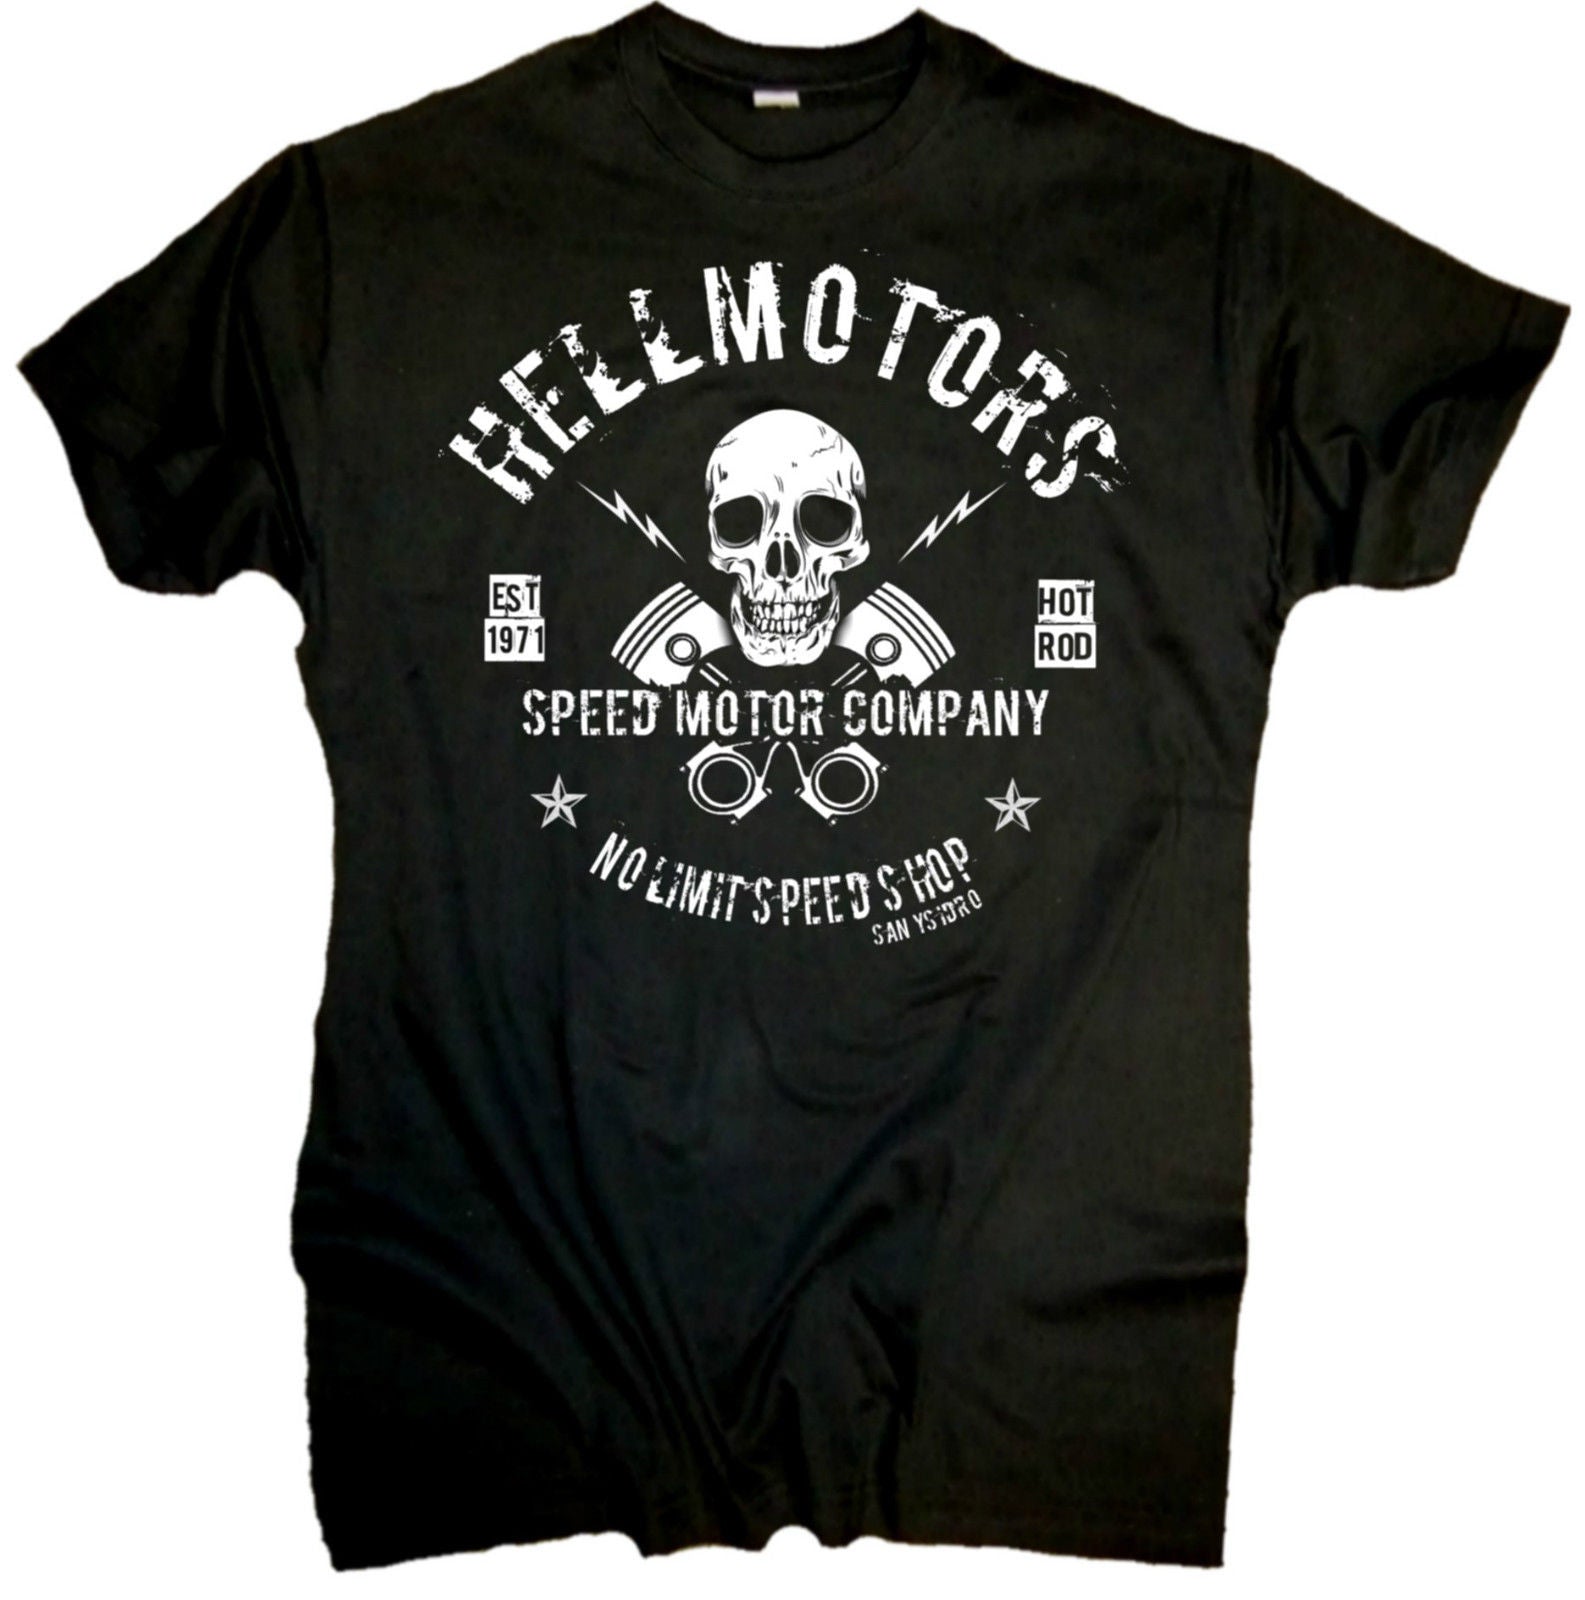 Hellmotors Skull Motorcycle Tee Shirts